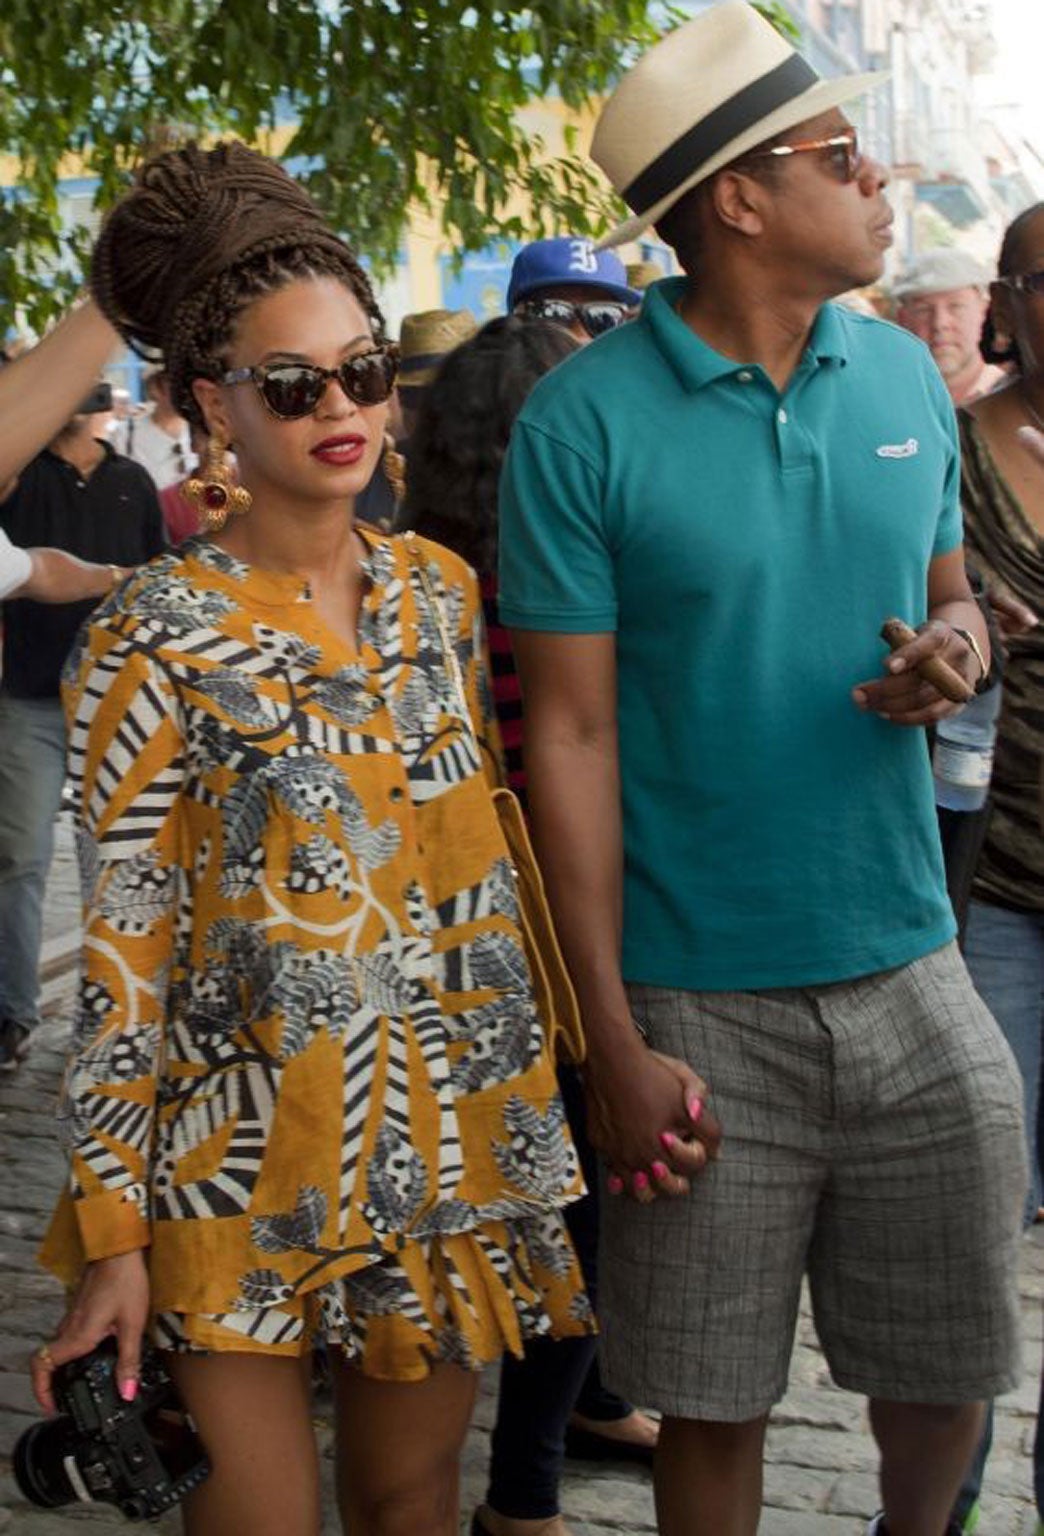 U.S. singer Beyonce and her husband, rapper Jay-Z, tour Old Havana, Cuba